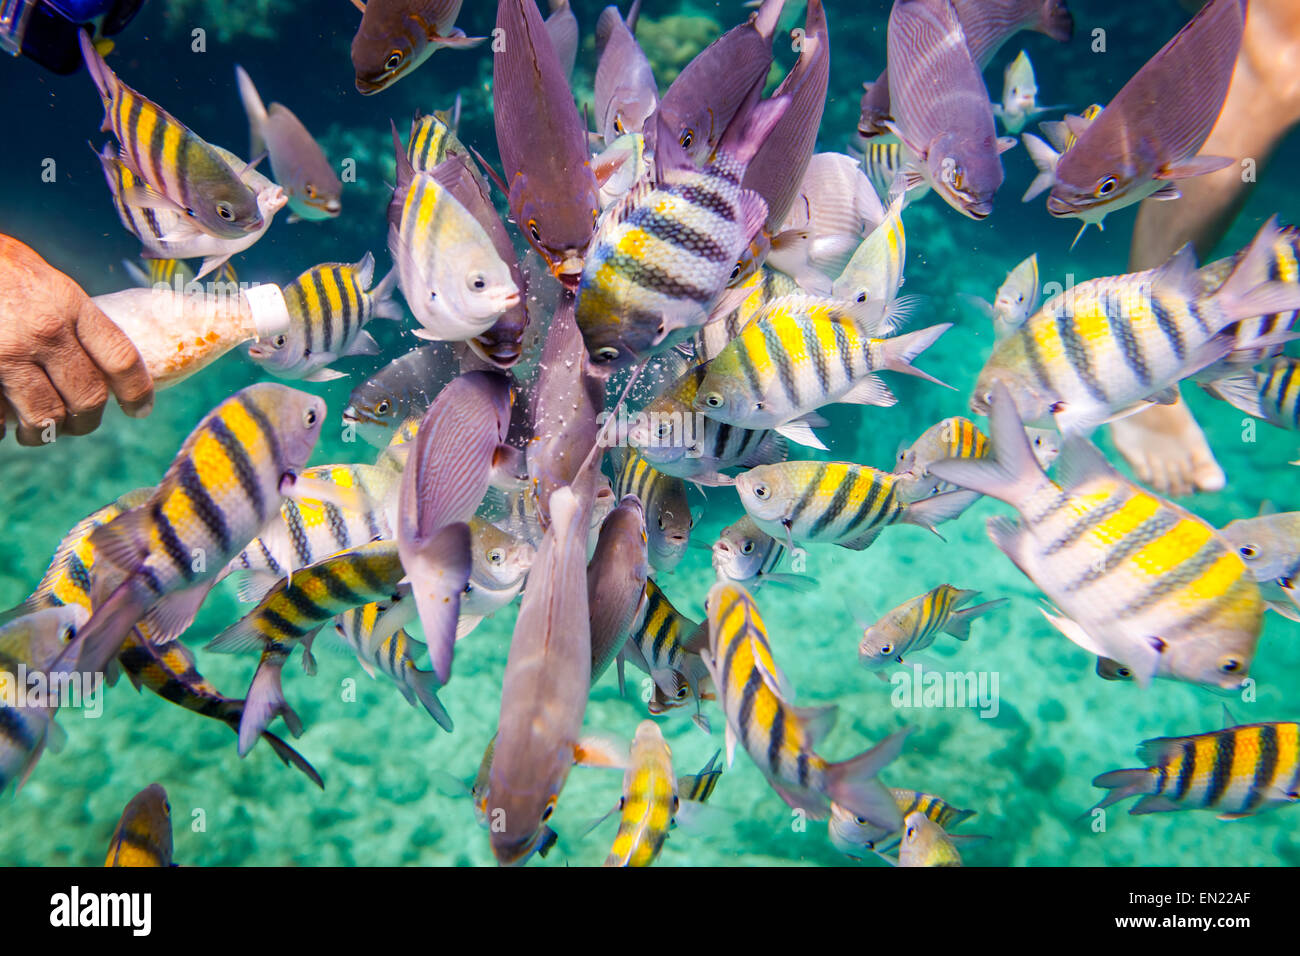 El hombre alimenta a los peces tropicales bajo el agua.Ocean Coral Reef. Advertencia - auténtico submarino de disparo en condiciones difíciles. A l Foto de stock